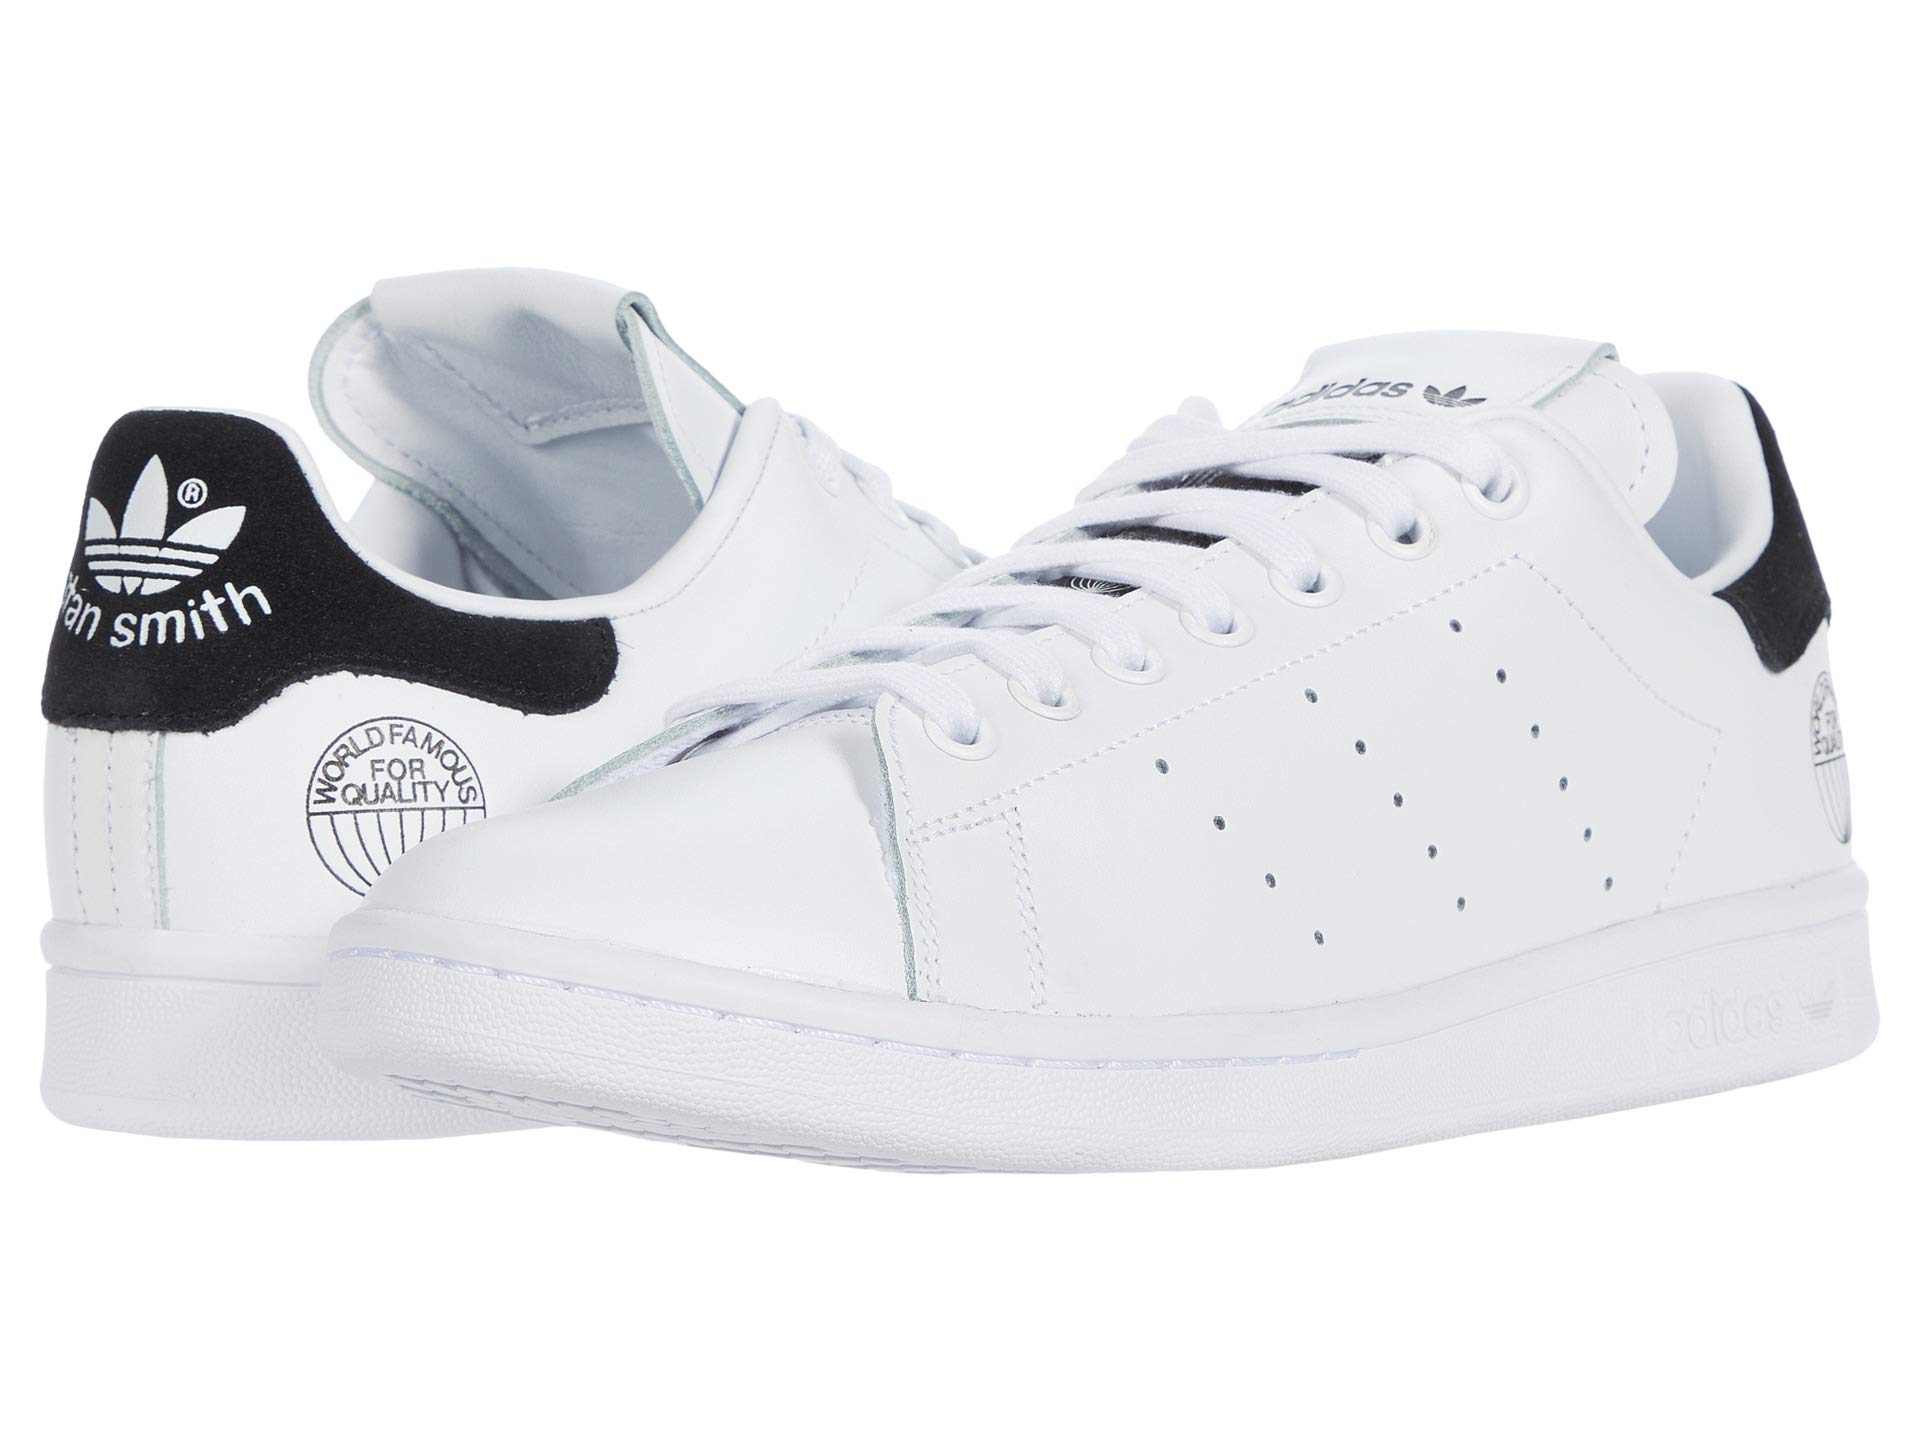 Мужские кроссовки Adidas Originals Stan Smith, белый/черный кроссовки adidas originals stan smith цвет footwear white core black footwear white